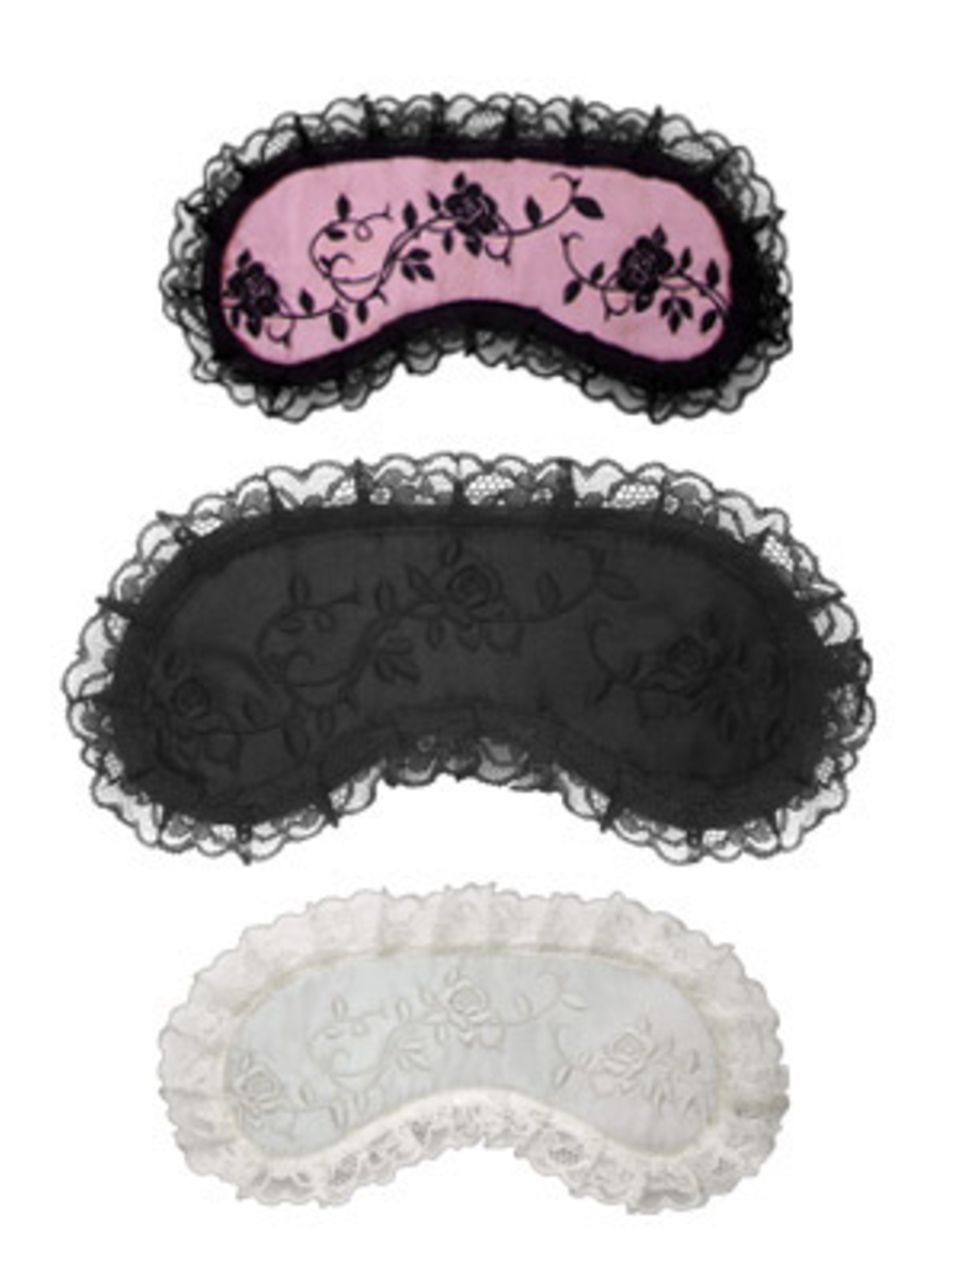 Süße Schlafmasken in Rosa, Weiß und Schwarz von Daydream, je um 15 Euro. Über www.daydream.ch.